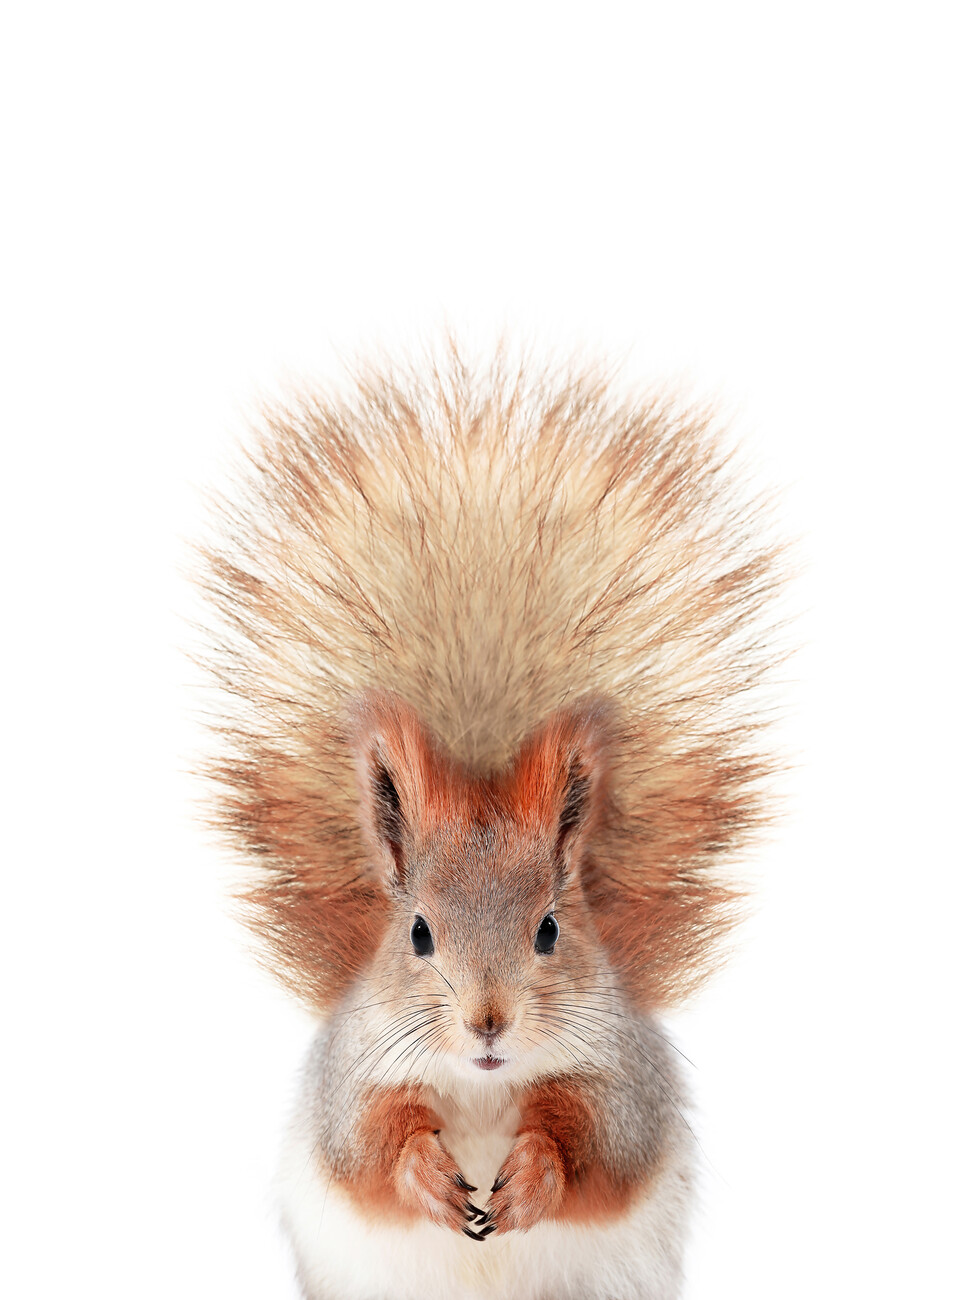 Fotografia artystyczna Baby Squirrel